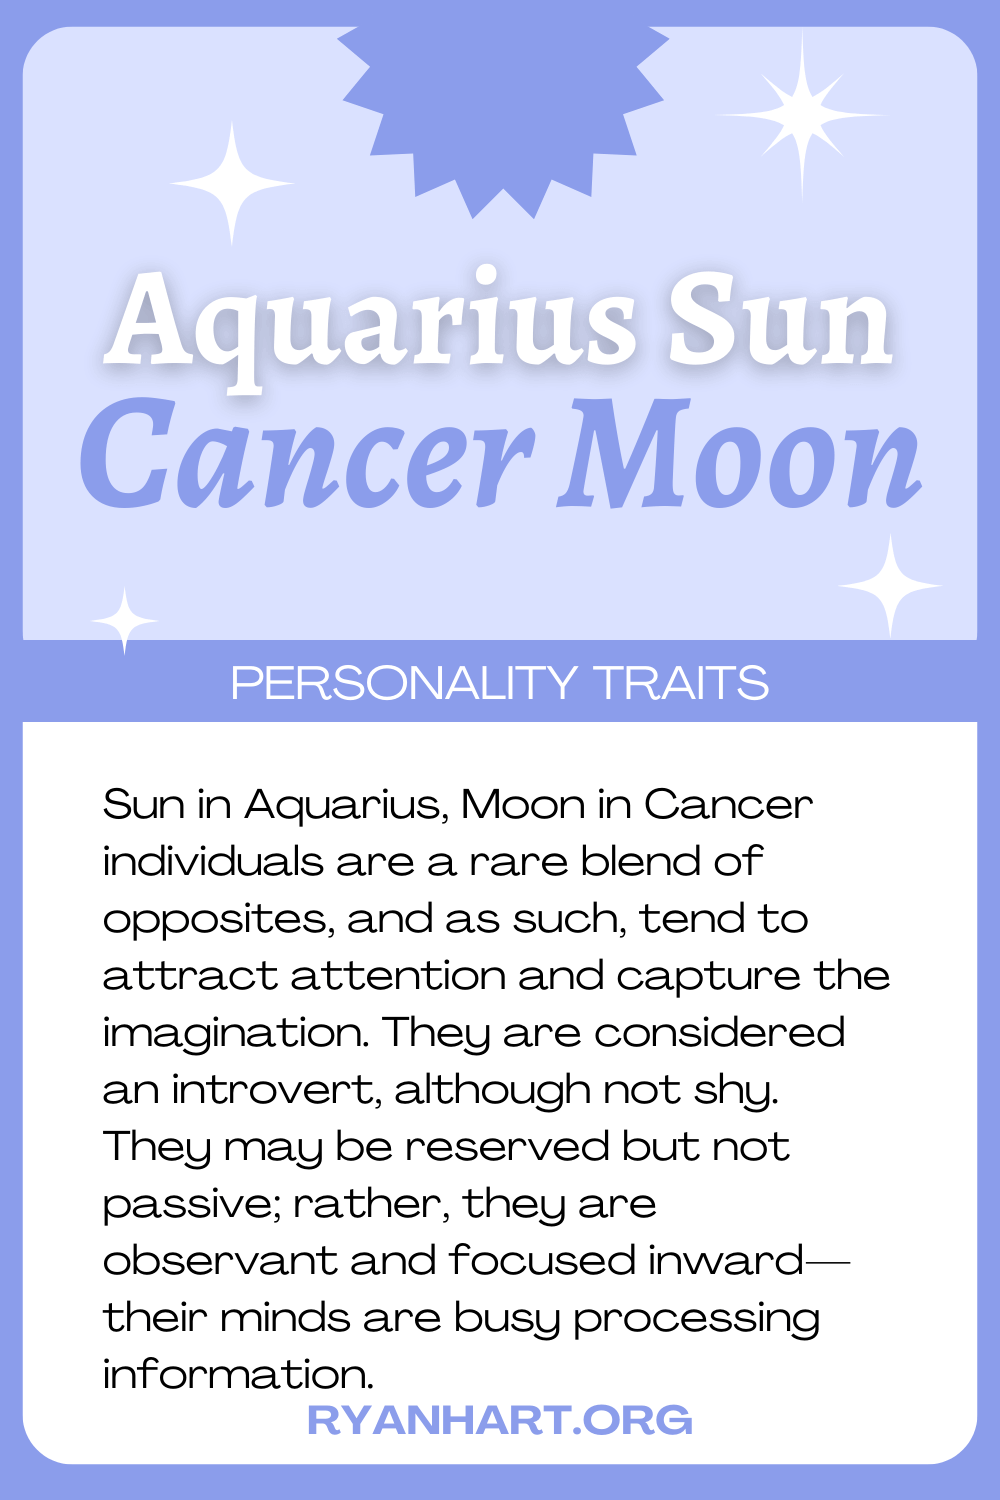  Feartan pearsantachd gealach Aquarius Sun Cancer